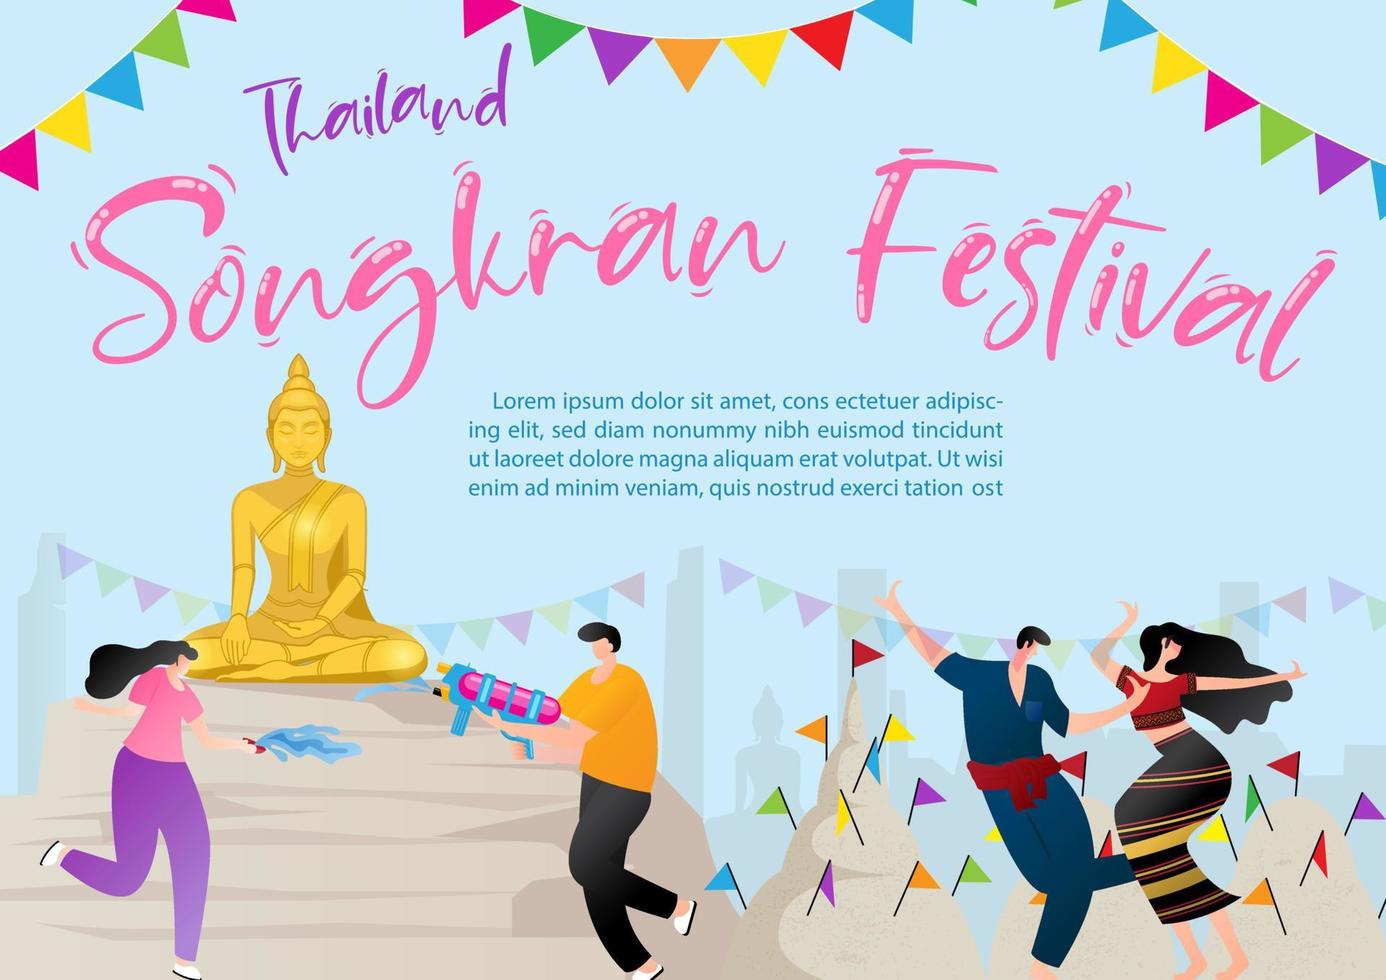 Thailand Songkran Festival Poster Illustration mit Beispiel Texte auf Blau Hintergrund. vektor